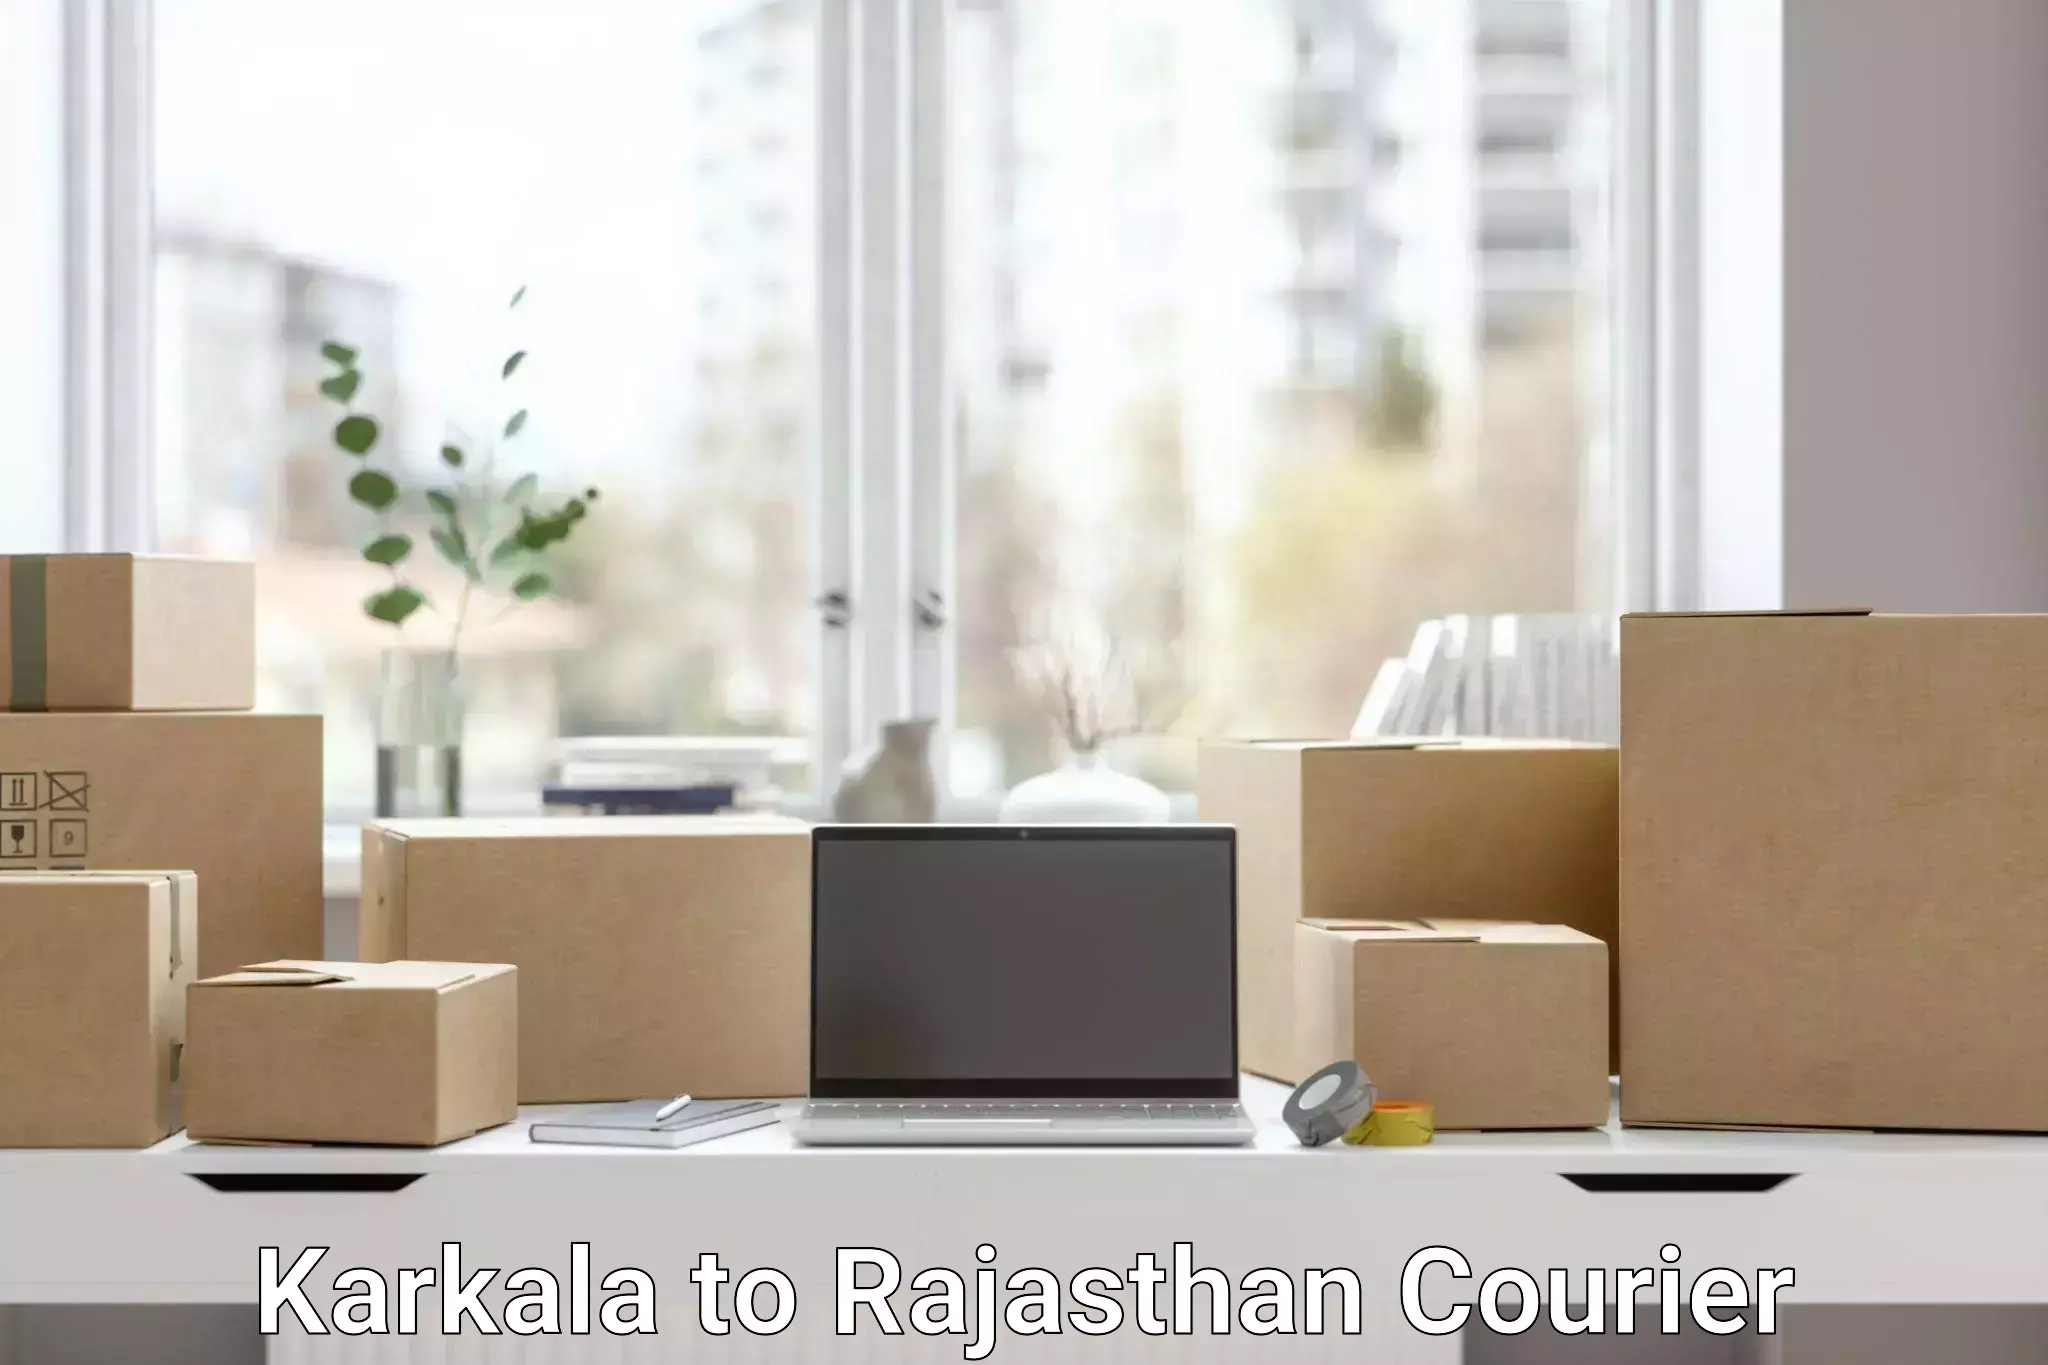 Global shipping solutions Karkala to Kotputli